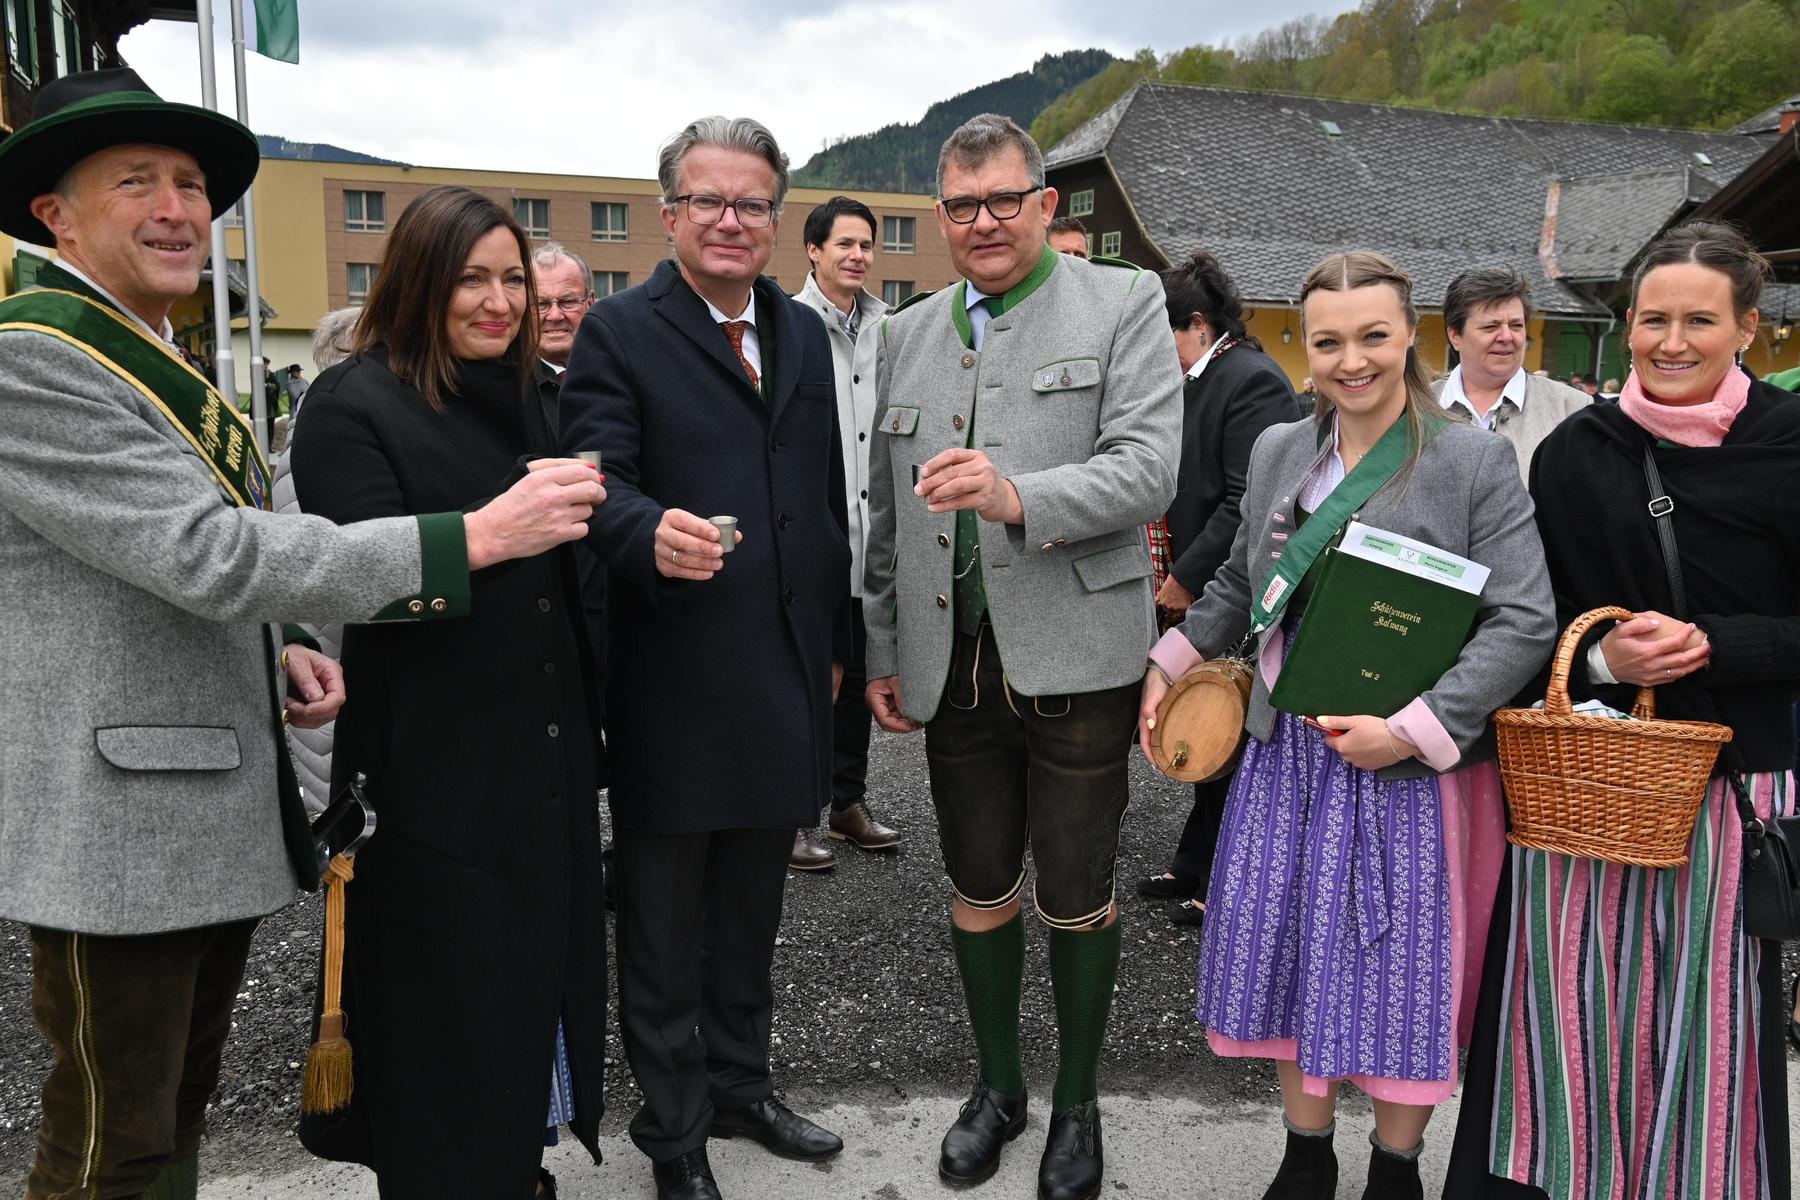 Eröffnung in Kalwang: Großer Aufmarsch zum neuen Gemeindeamt in der Alten Schmiede